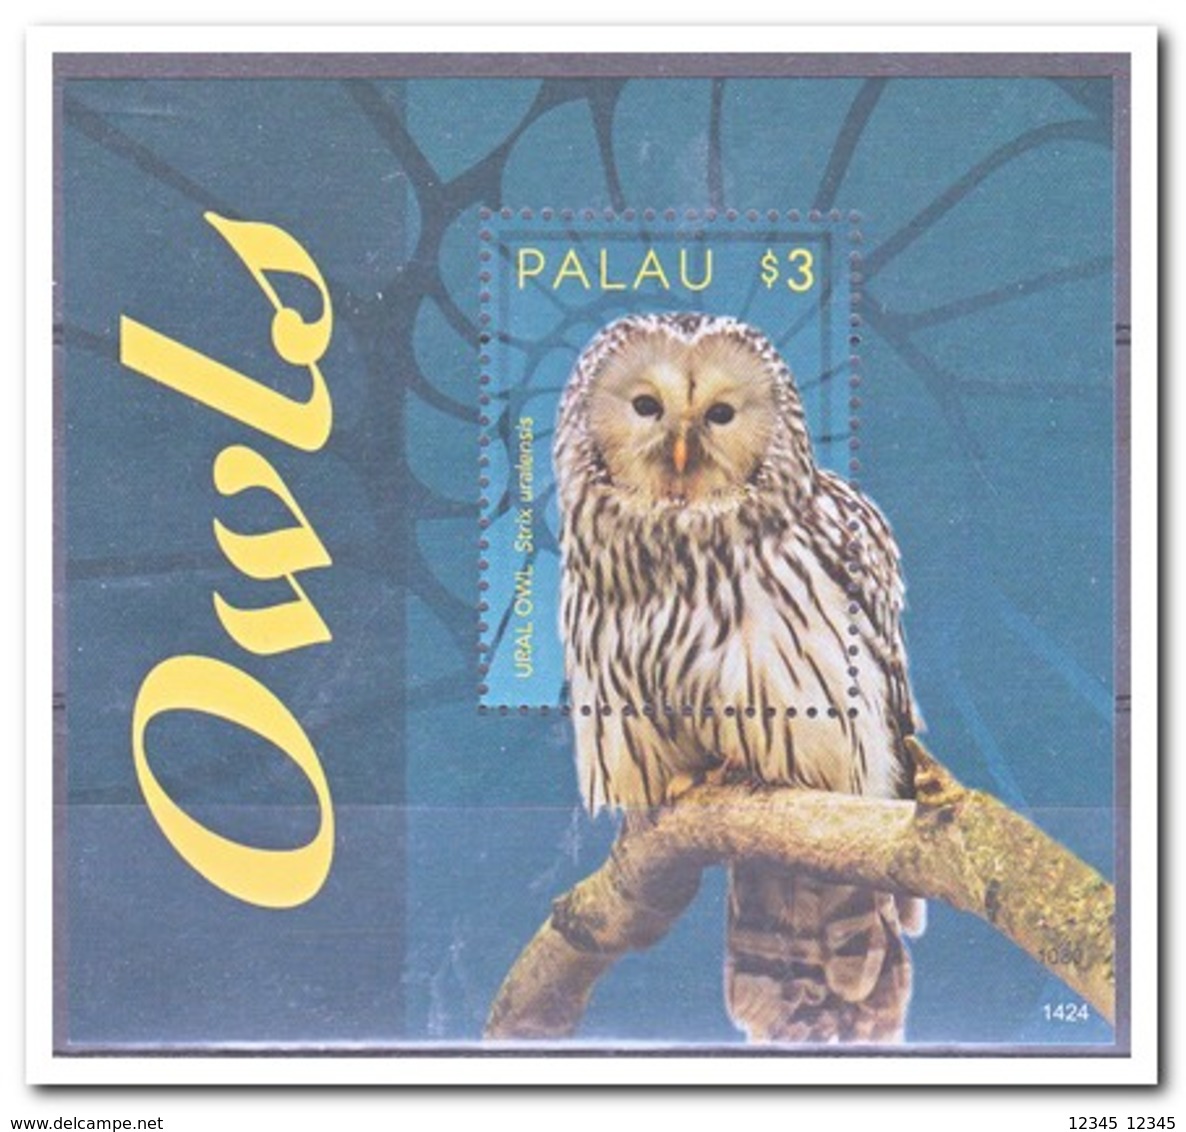 Palau 2014, Postfris MNH, Birds, Owls - Palau